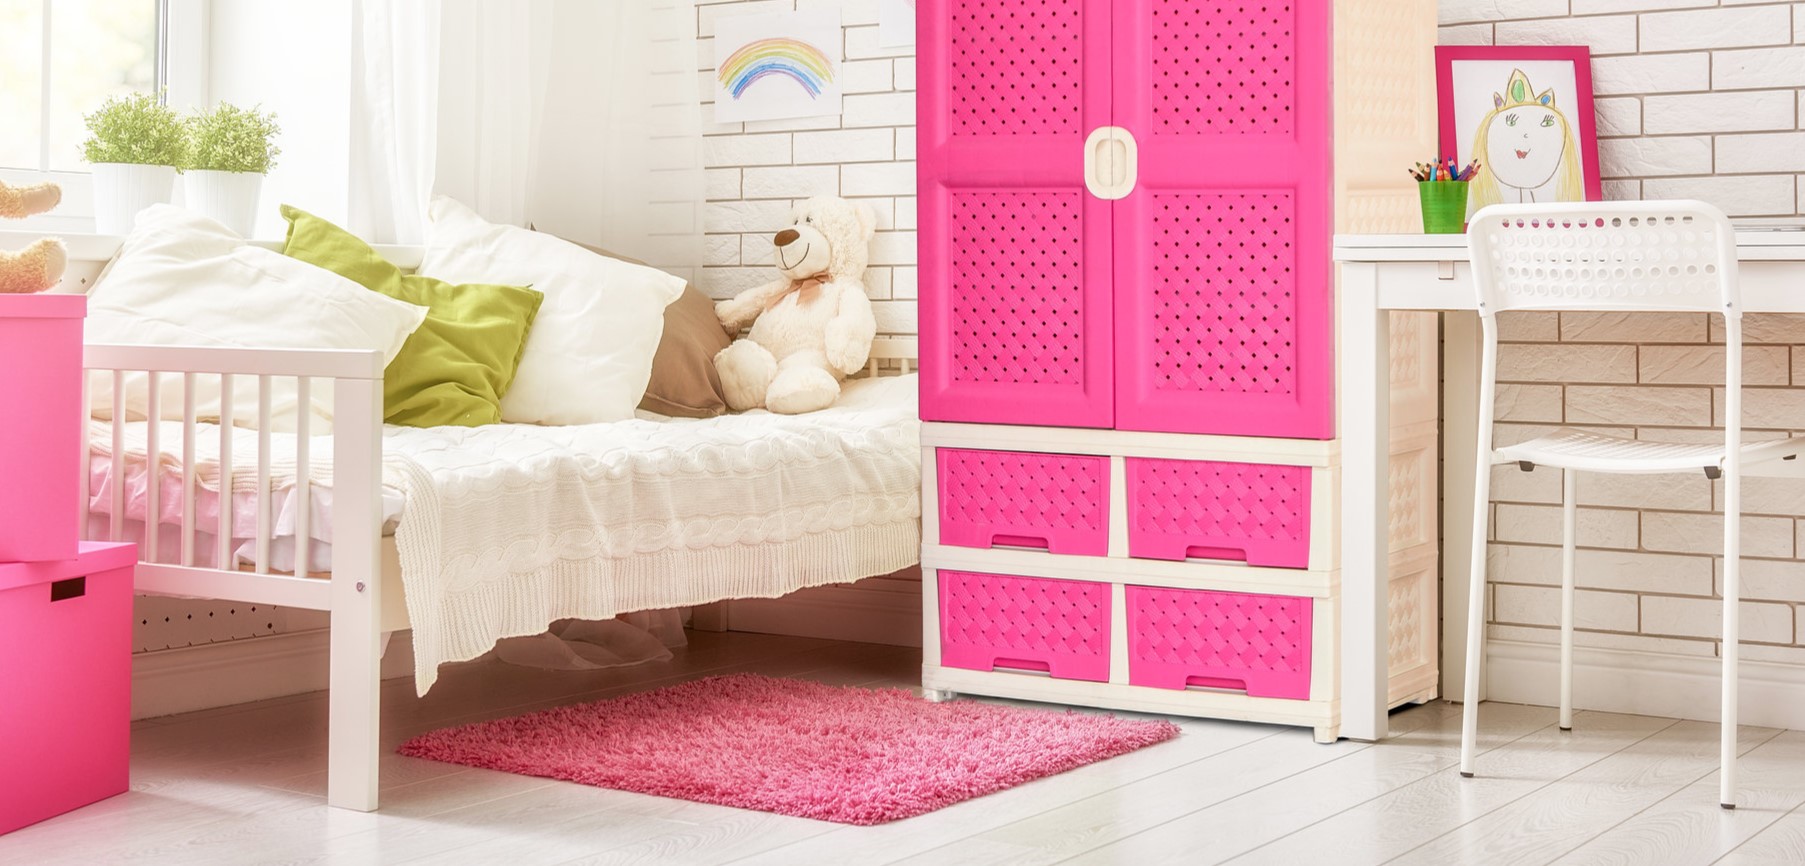 Яркий розовый ковер для детской комнаты